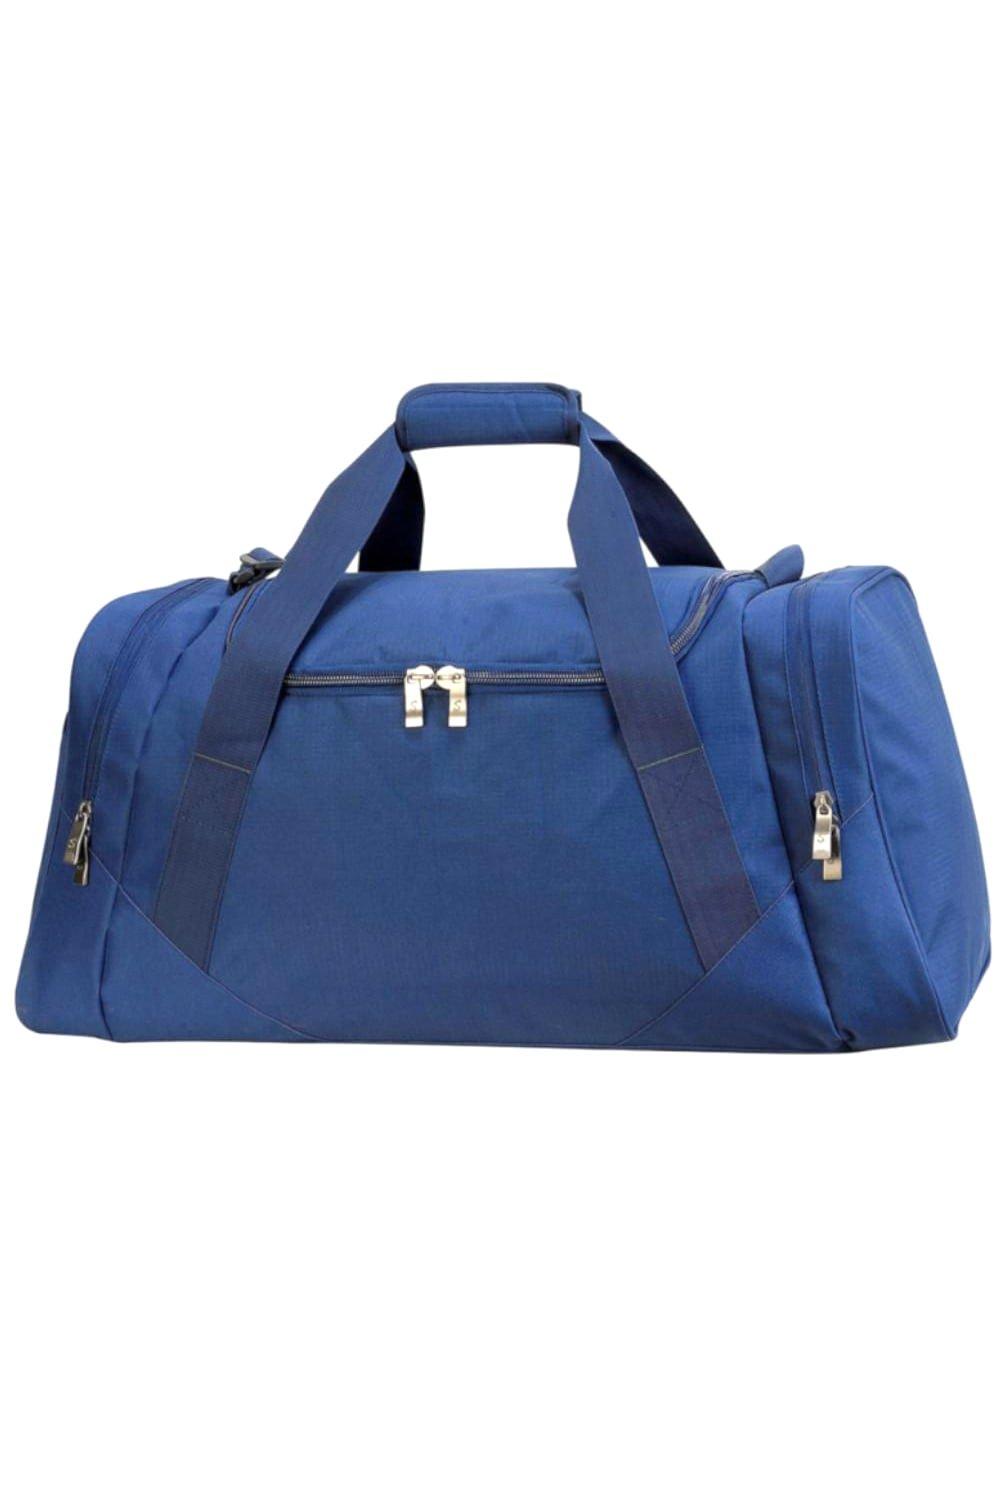 Дорожная сумка Aberdeen 70 литров Shugon, темно-синий сумка дорожная luckyclovery 18х28х46 см отделение для обуви фиксирующие ремни плечевой ремень синий